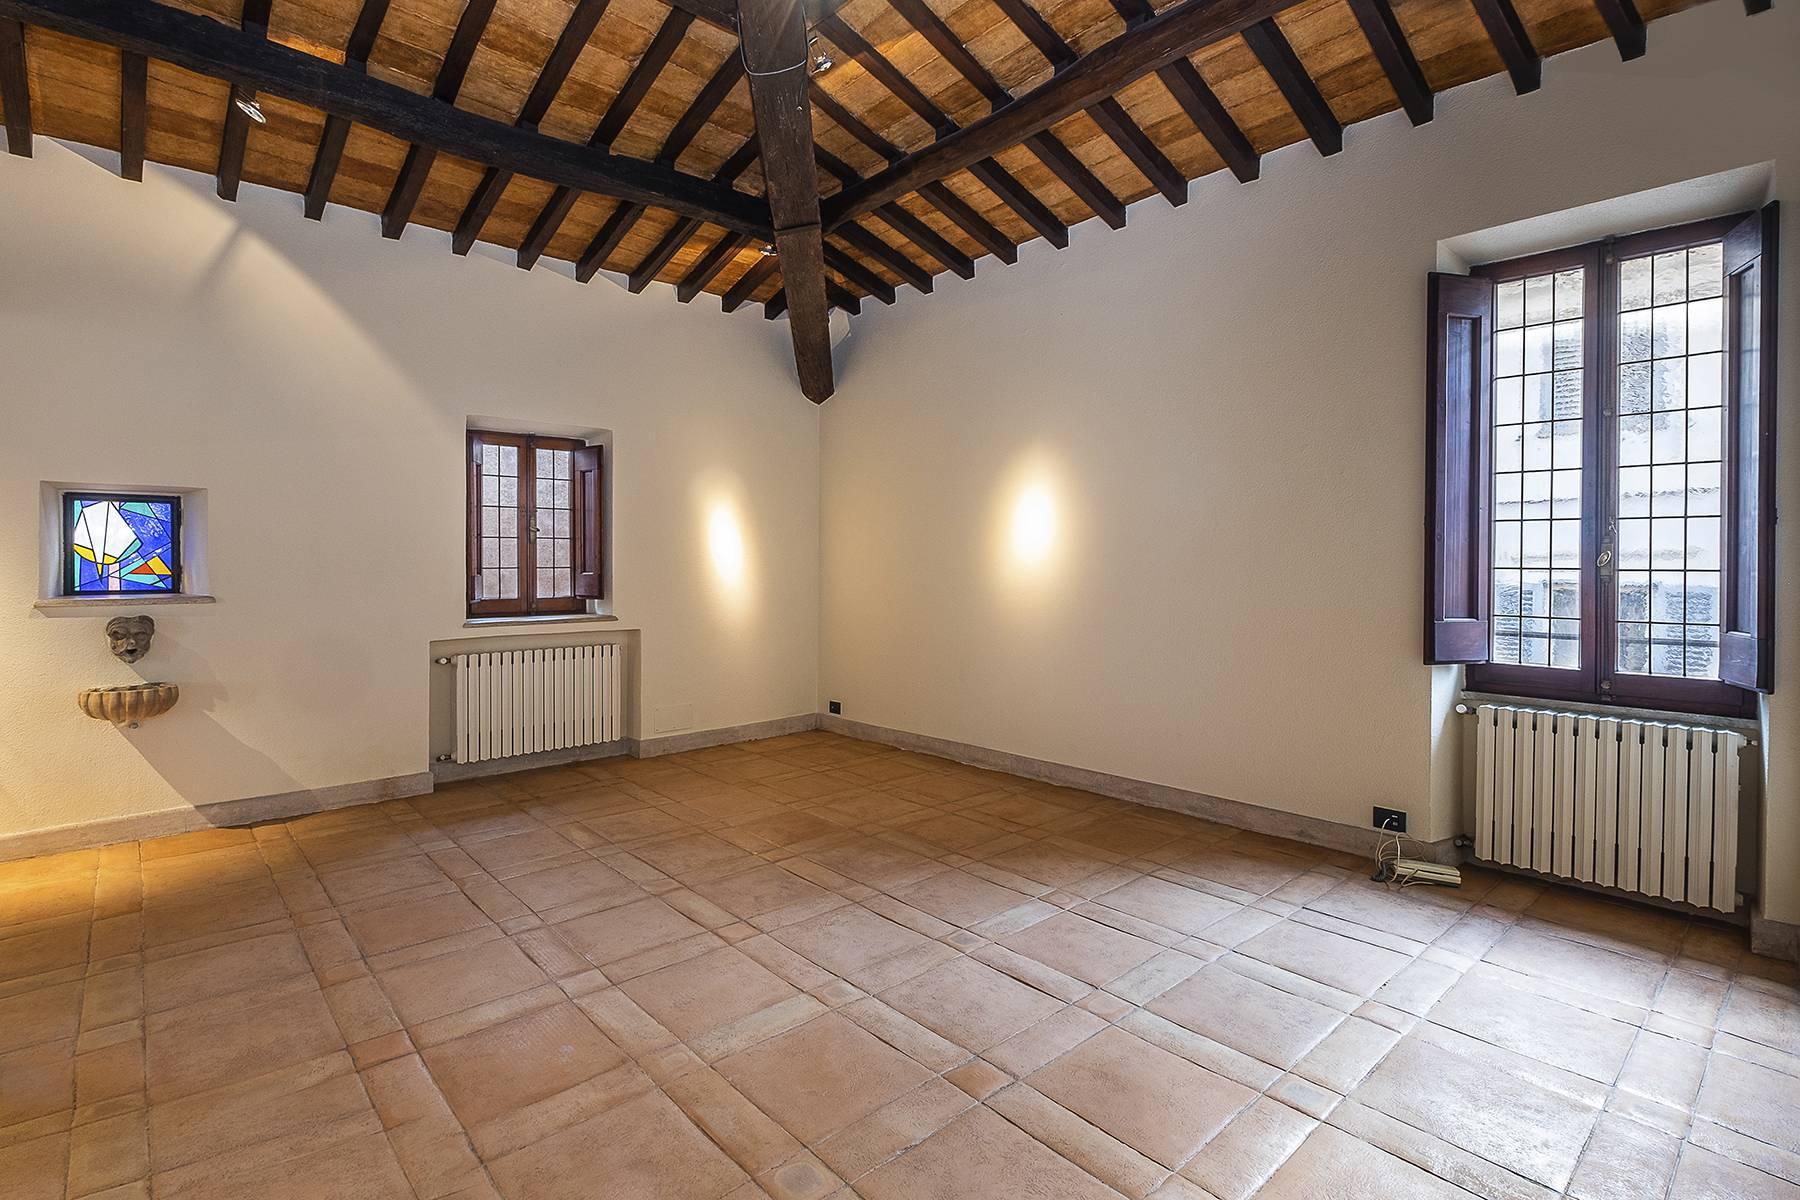 Esclusivo appartamento in centro storico con vista sui tetti di Roma - 8